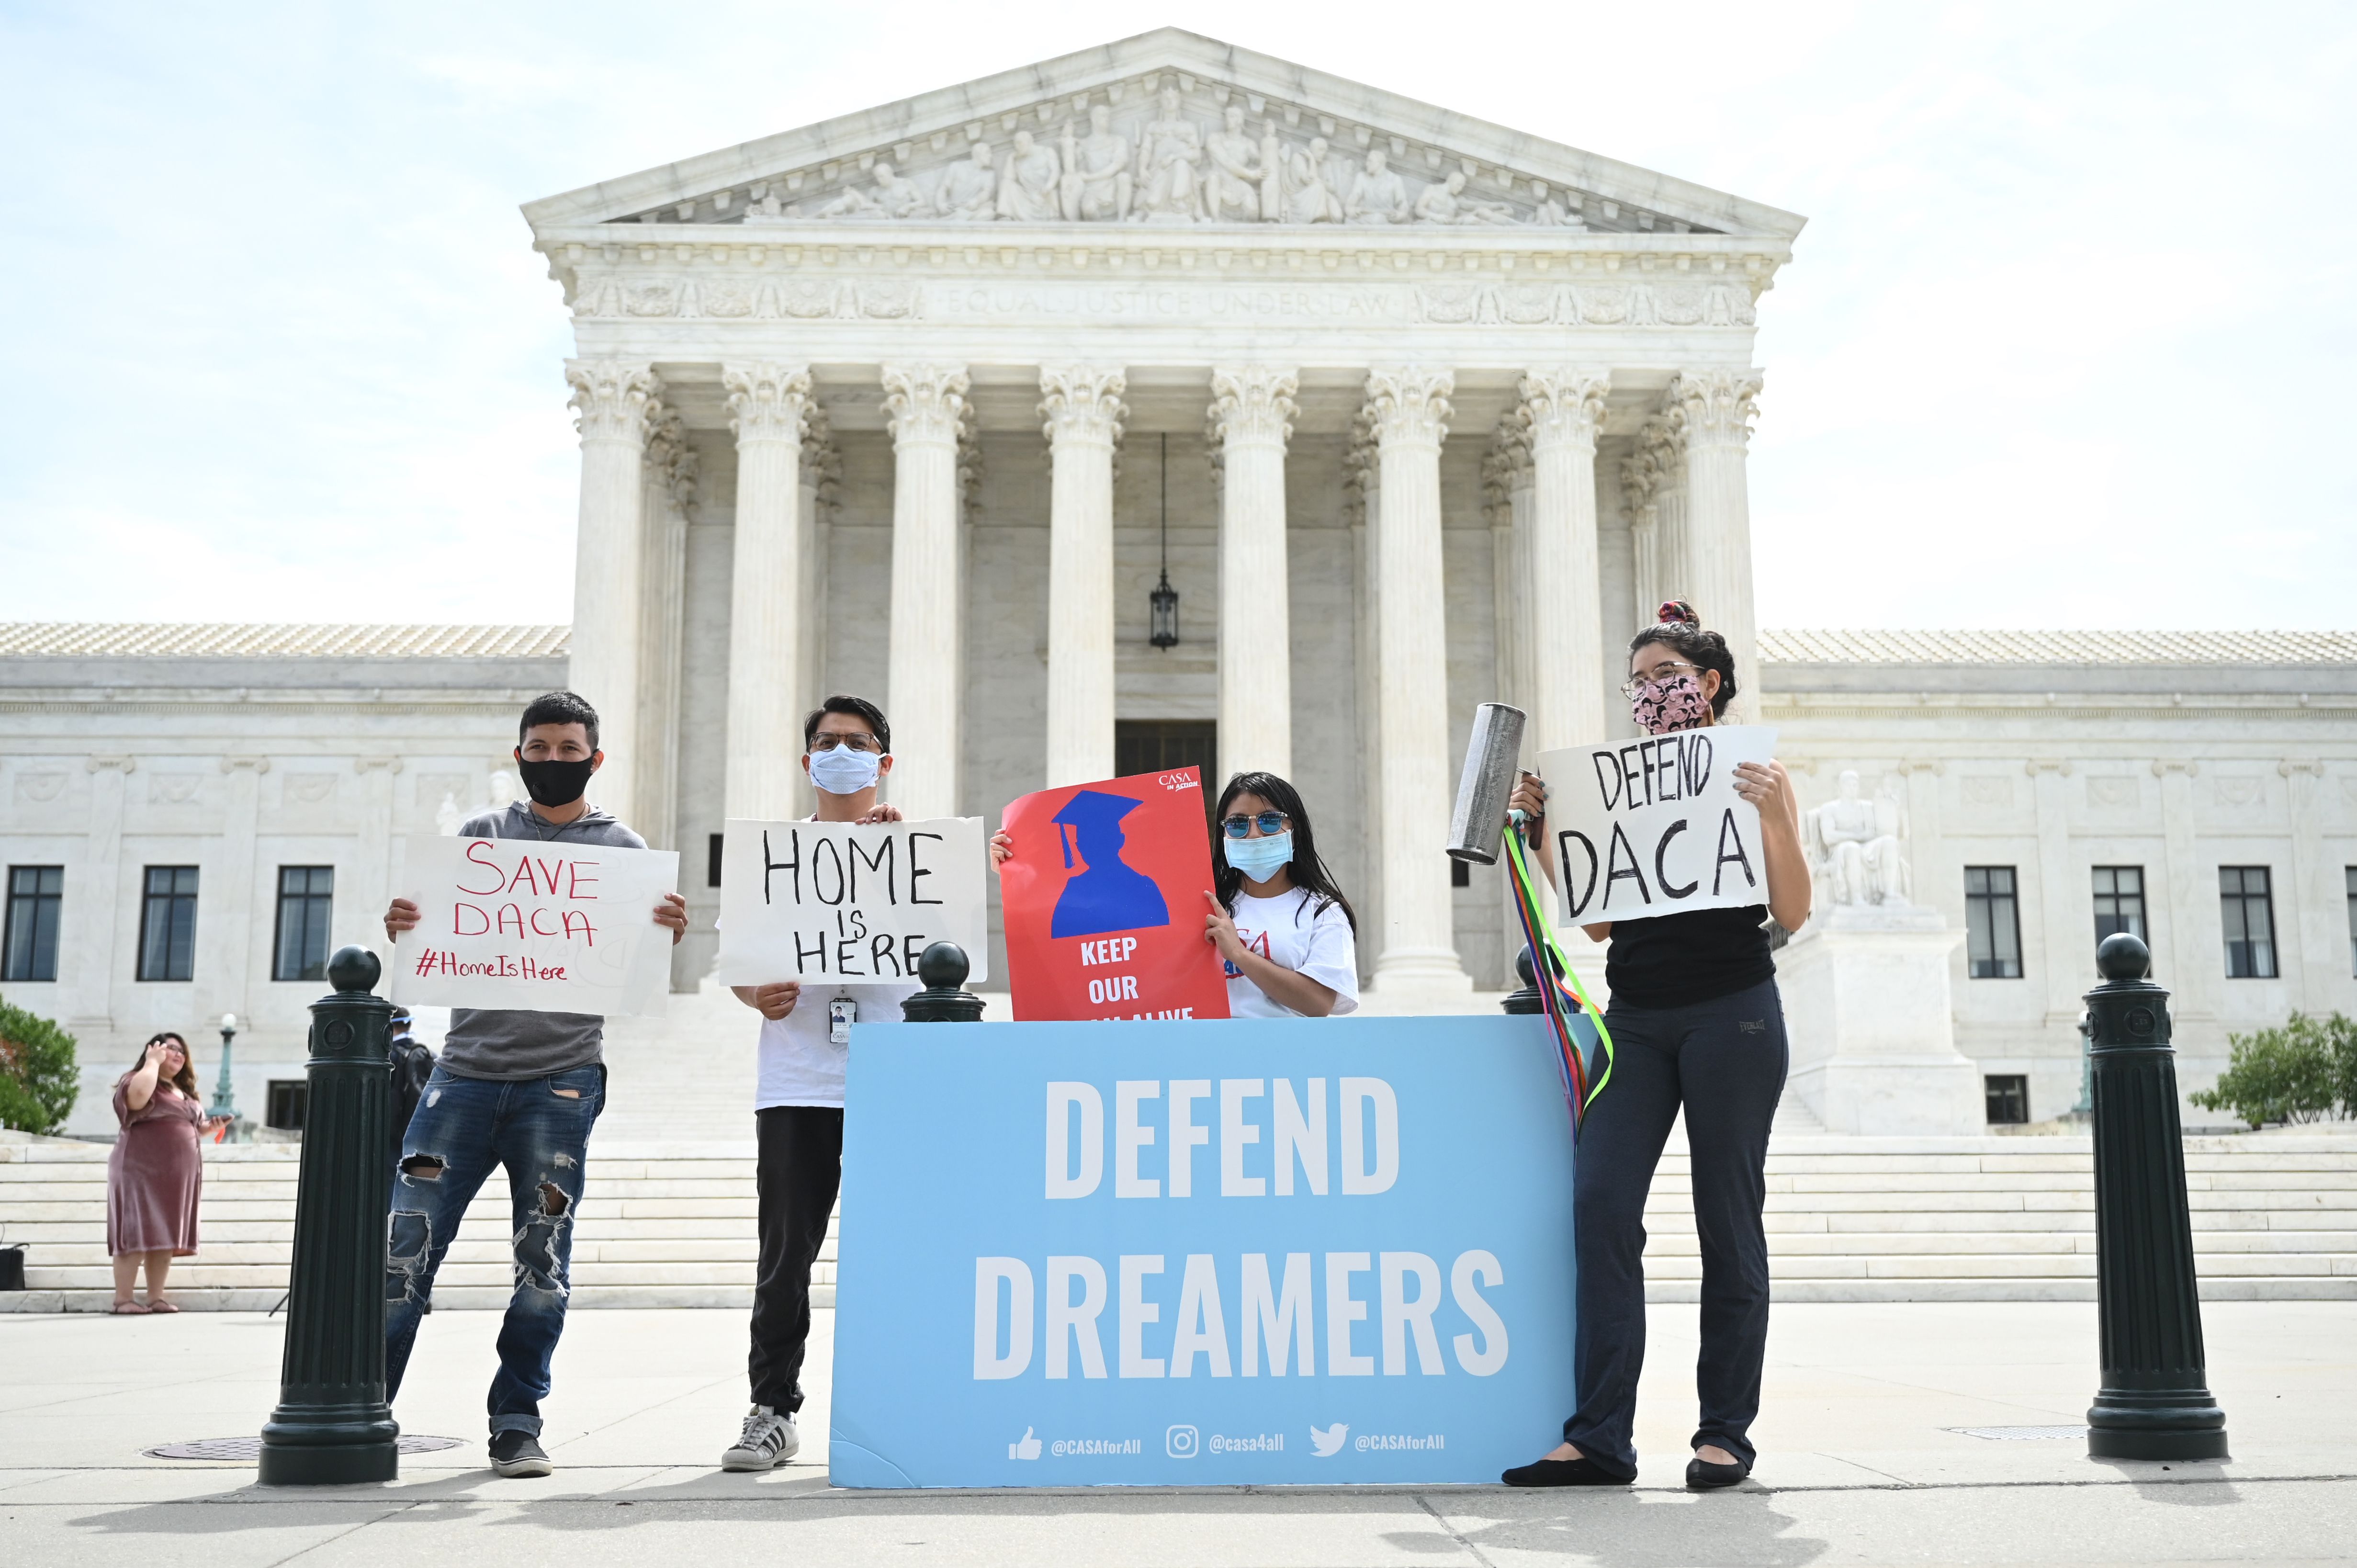 Millones de dreamers se beneficiarían con una reforma en la Cámara Baja de Estados Unidos. (Foto Prensa Libre: AFP)